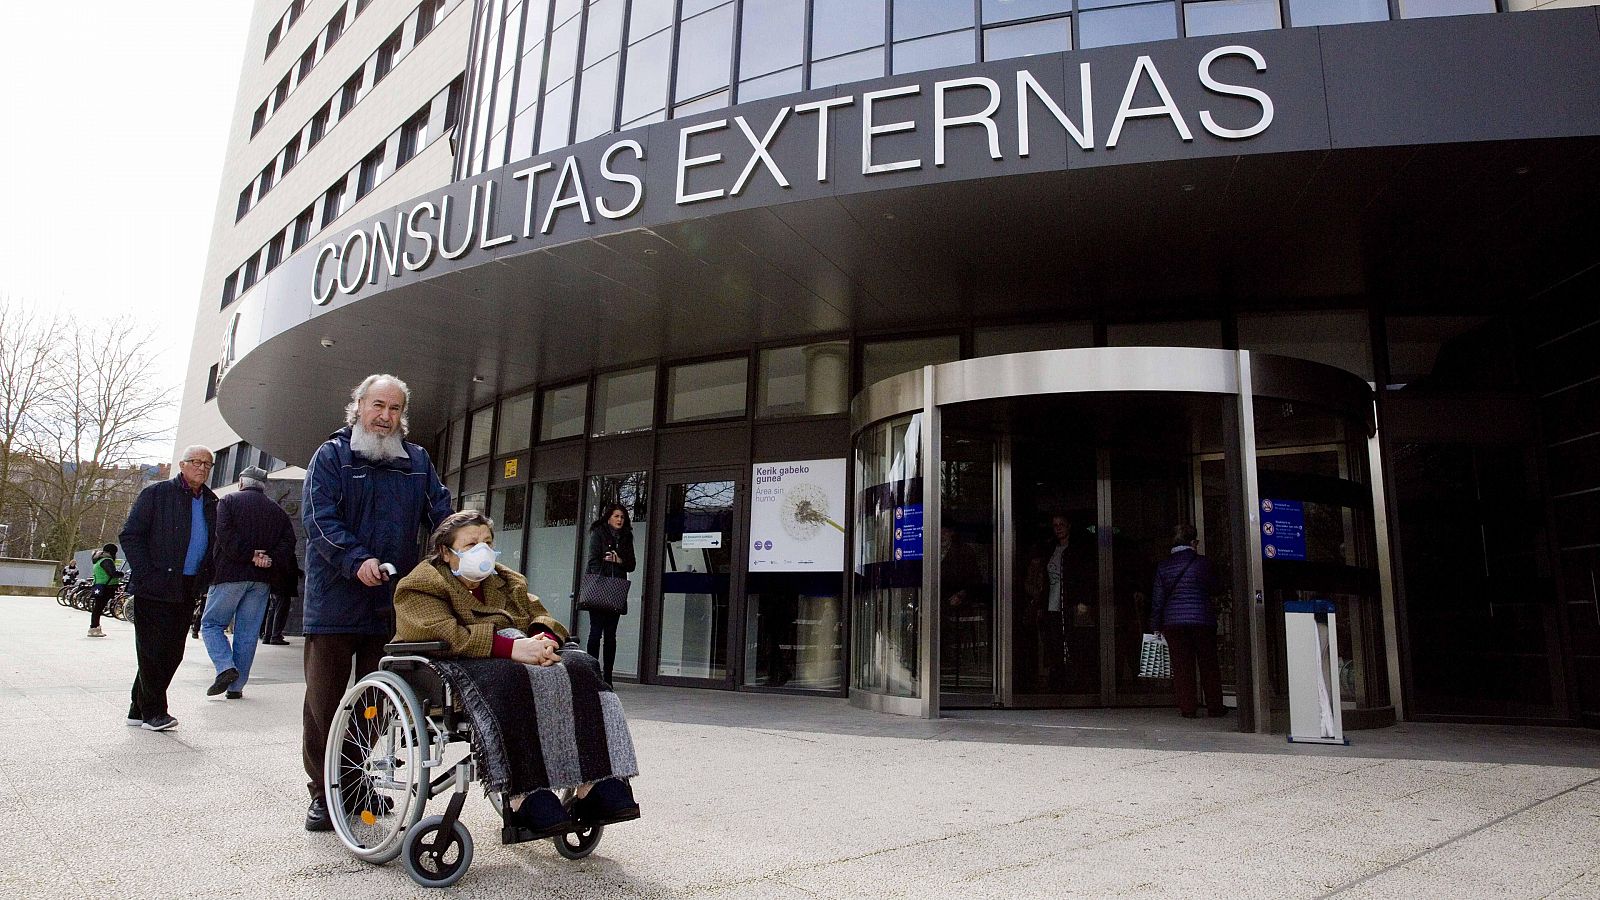 El Ministerio de Sanidad mantiene de momento el escenario actual de contención en España por coronavirus, según ha afirmado el ministro, Salvador Illa, quien ha asegurado que España es "capaz" de contener el virus "si se siguen las medidas de las aut